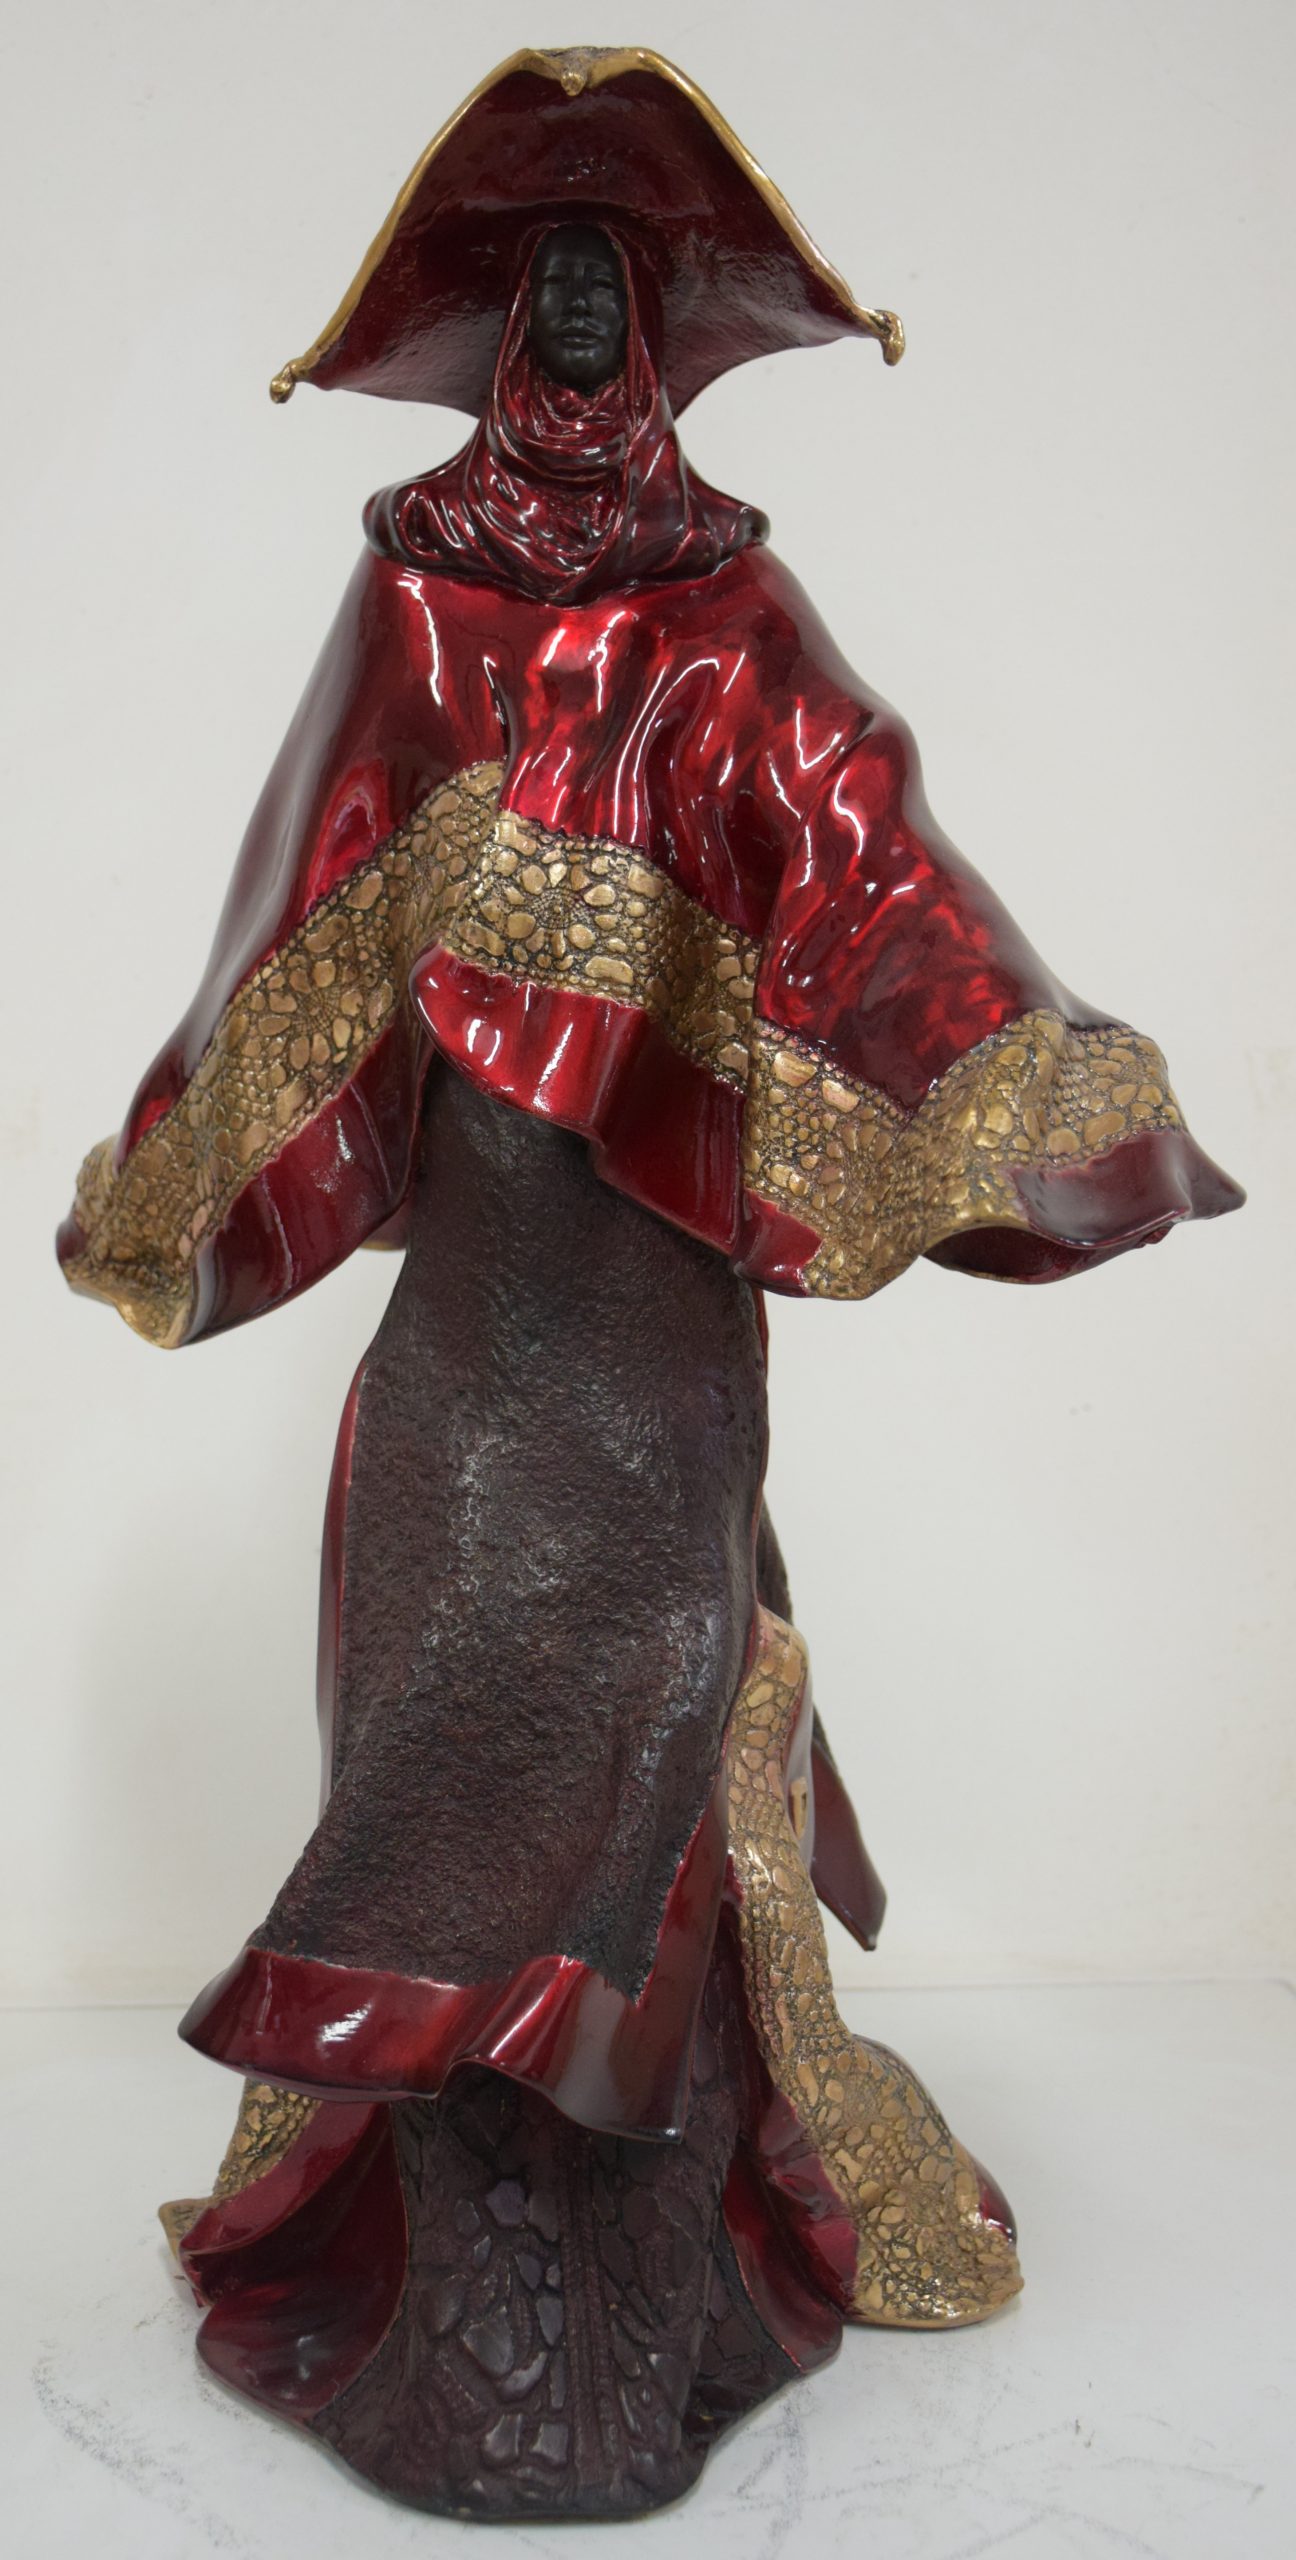 Sculpture en bronze de Paul Beckrich disponible et visible à la Galerie Maner de pont-aven "femme aux pompon"